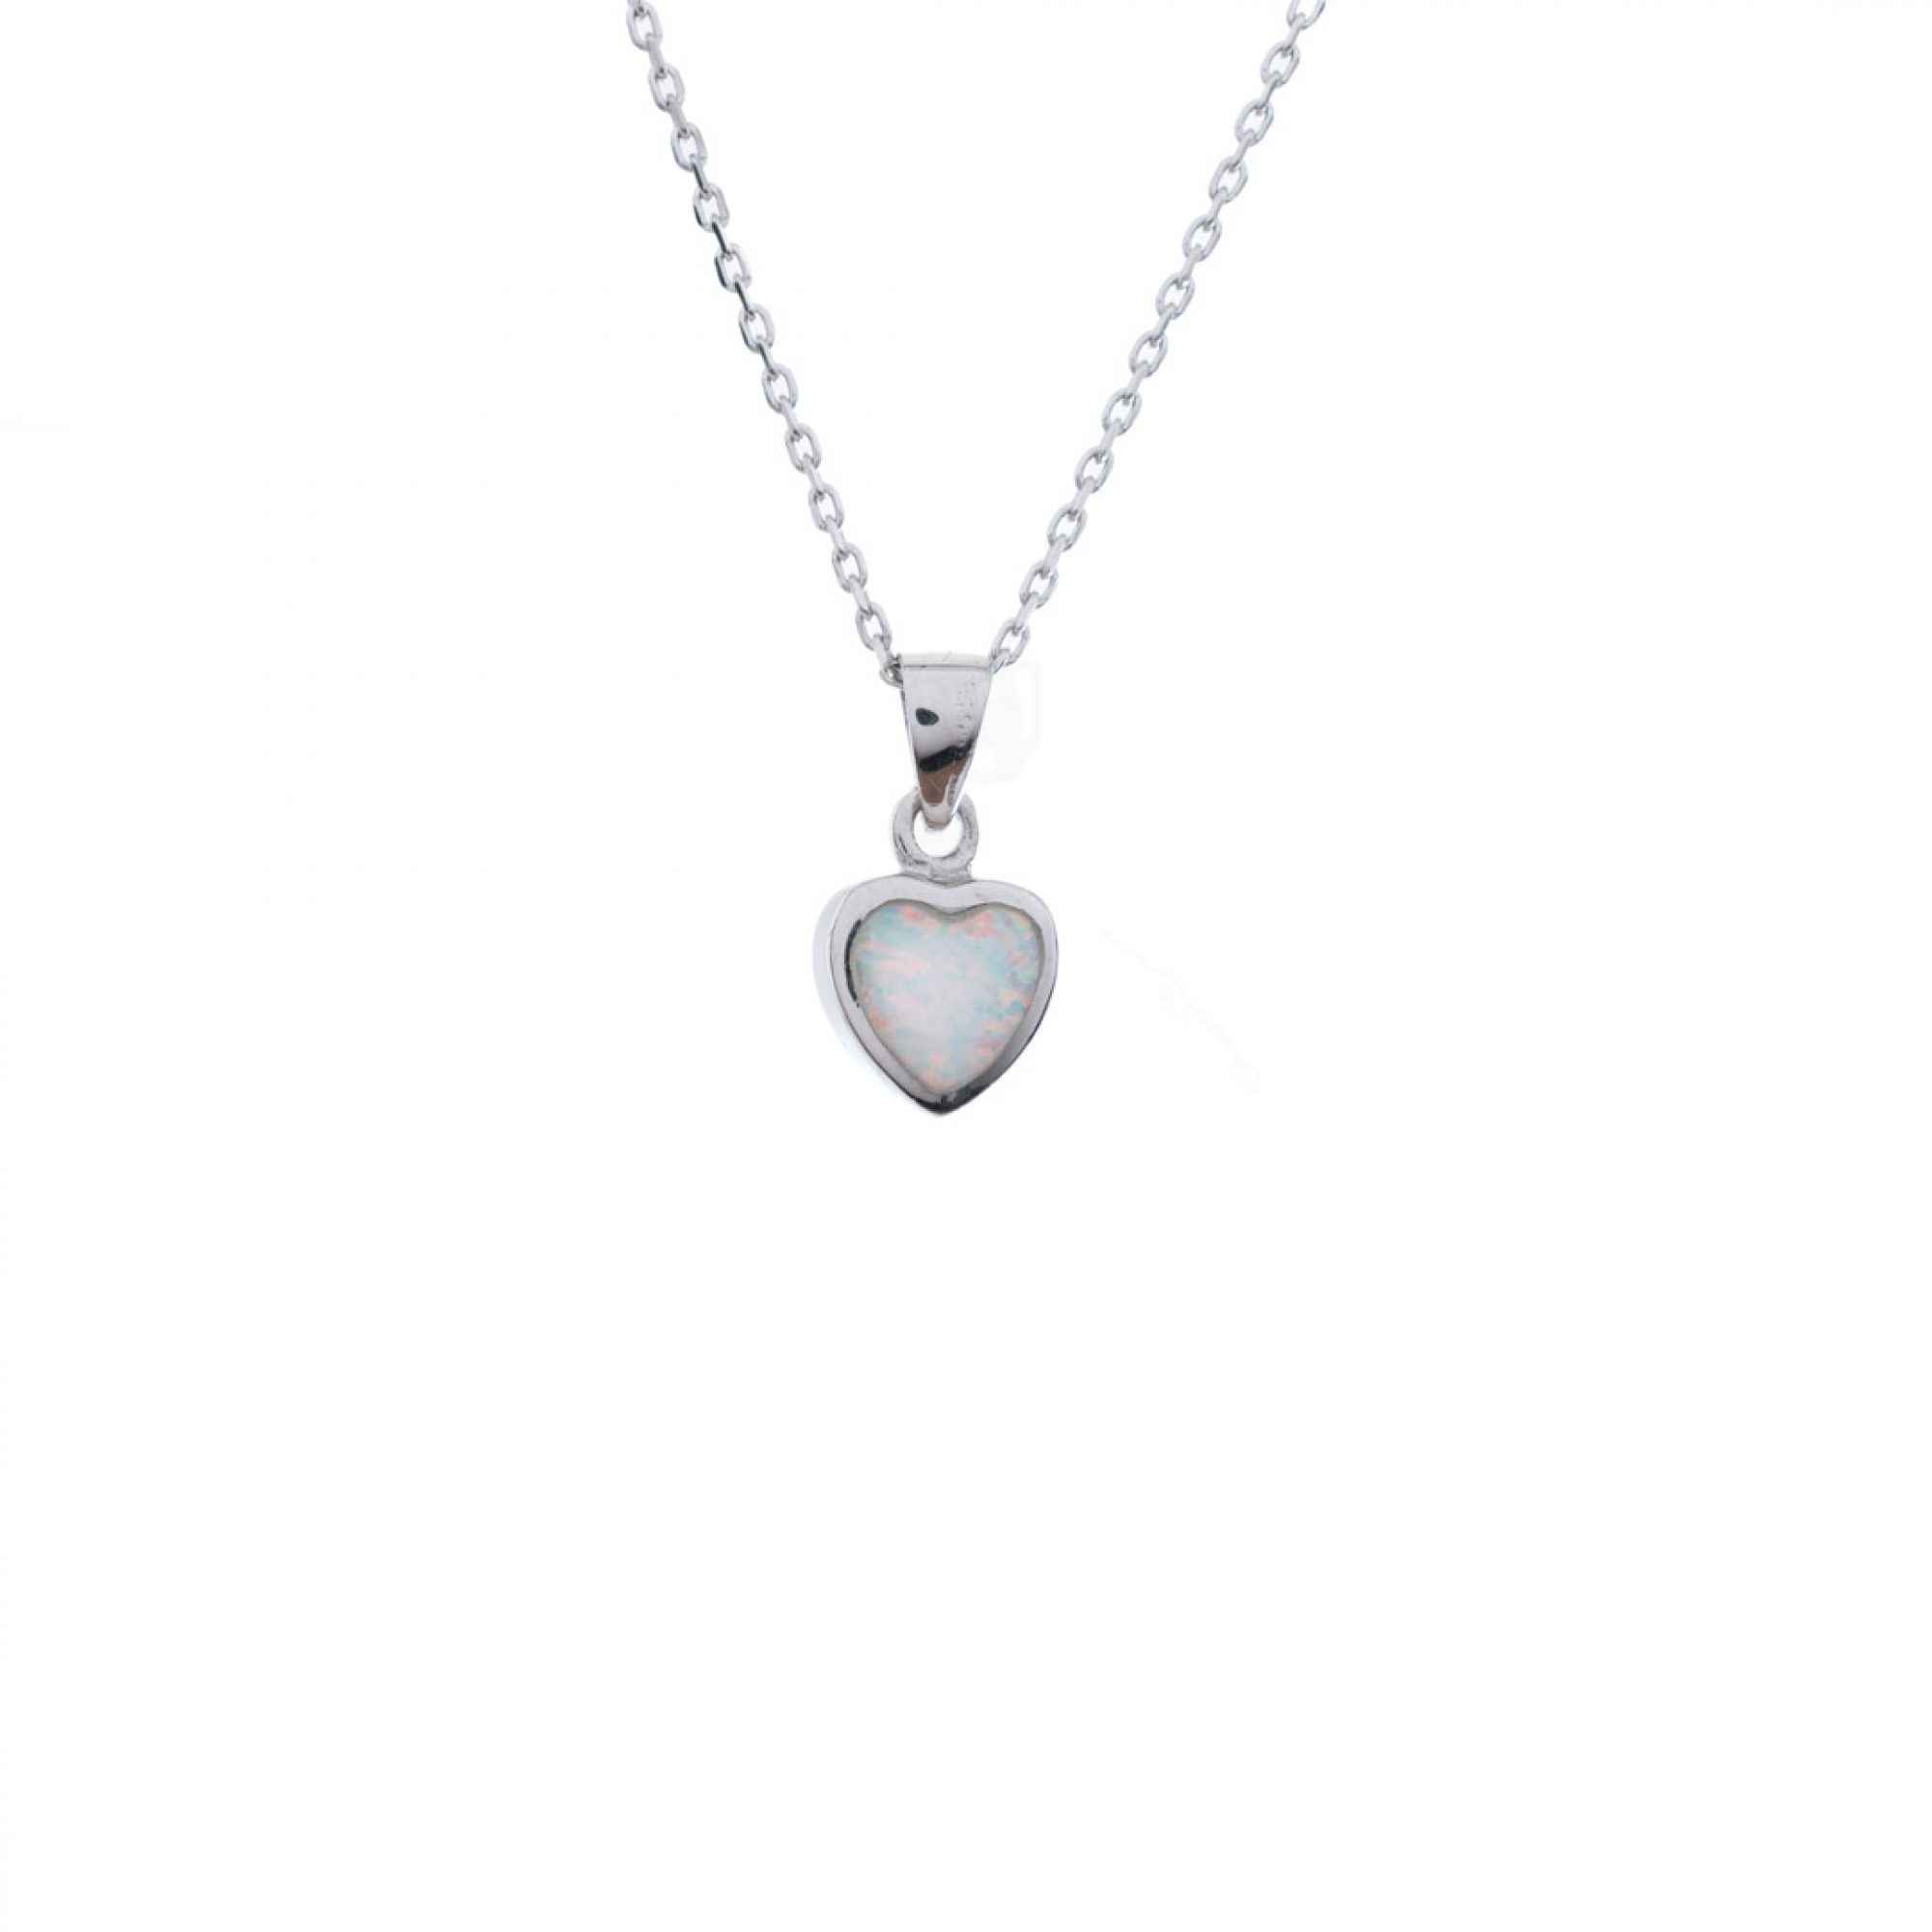 White opal heart pendant